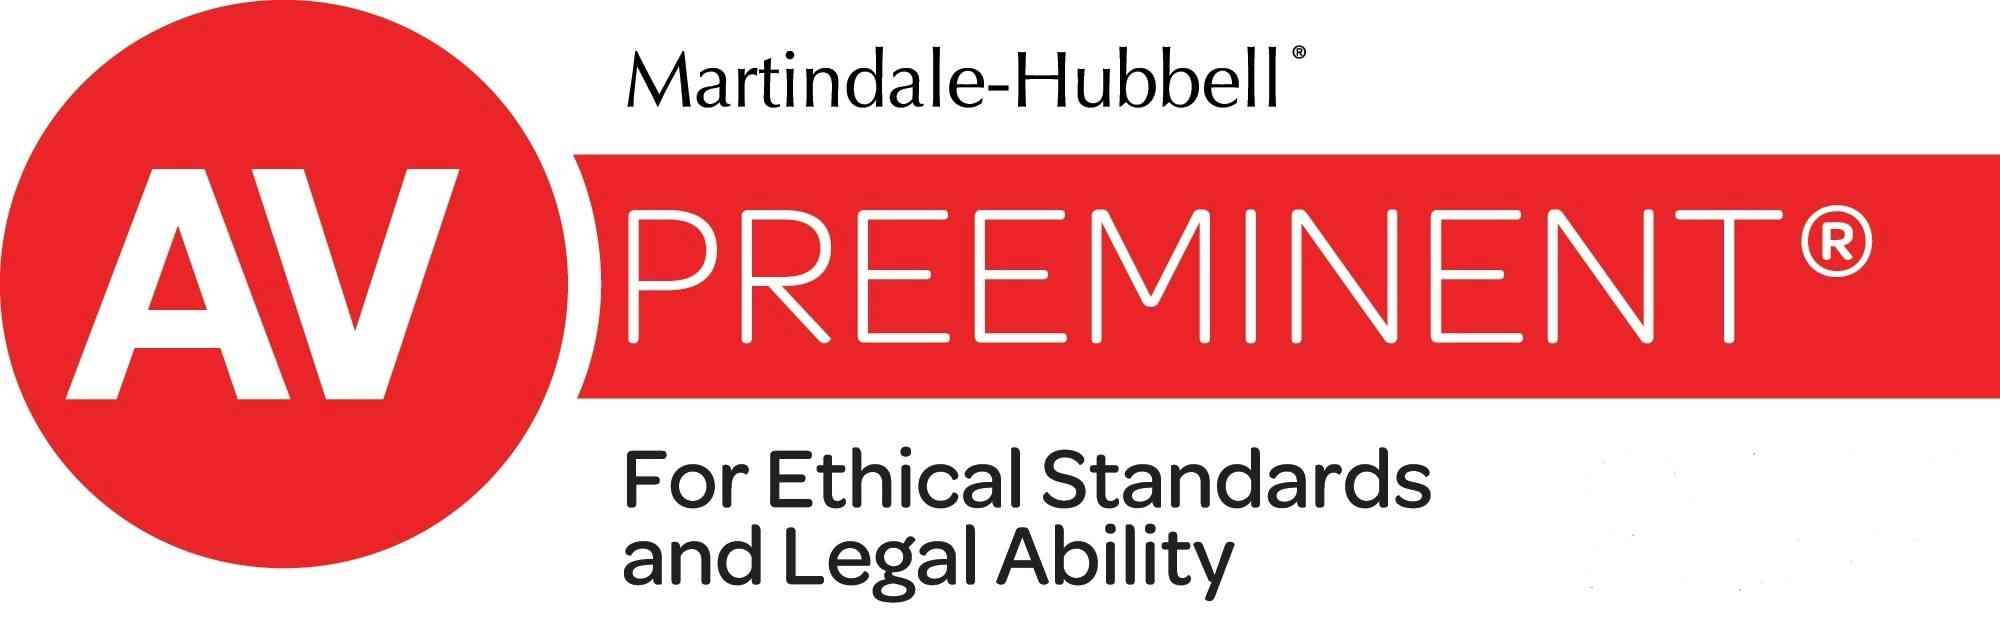 Martindale Hubbell AV Preeminent For Ethical Standards Legal Liability